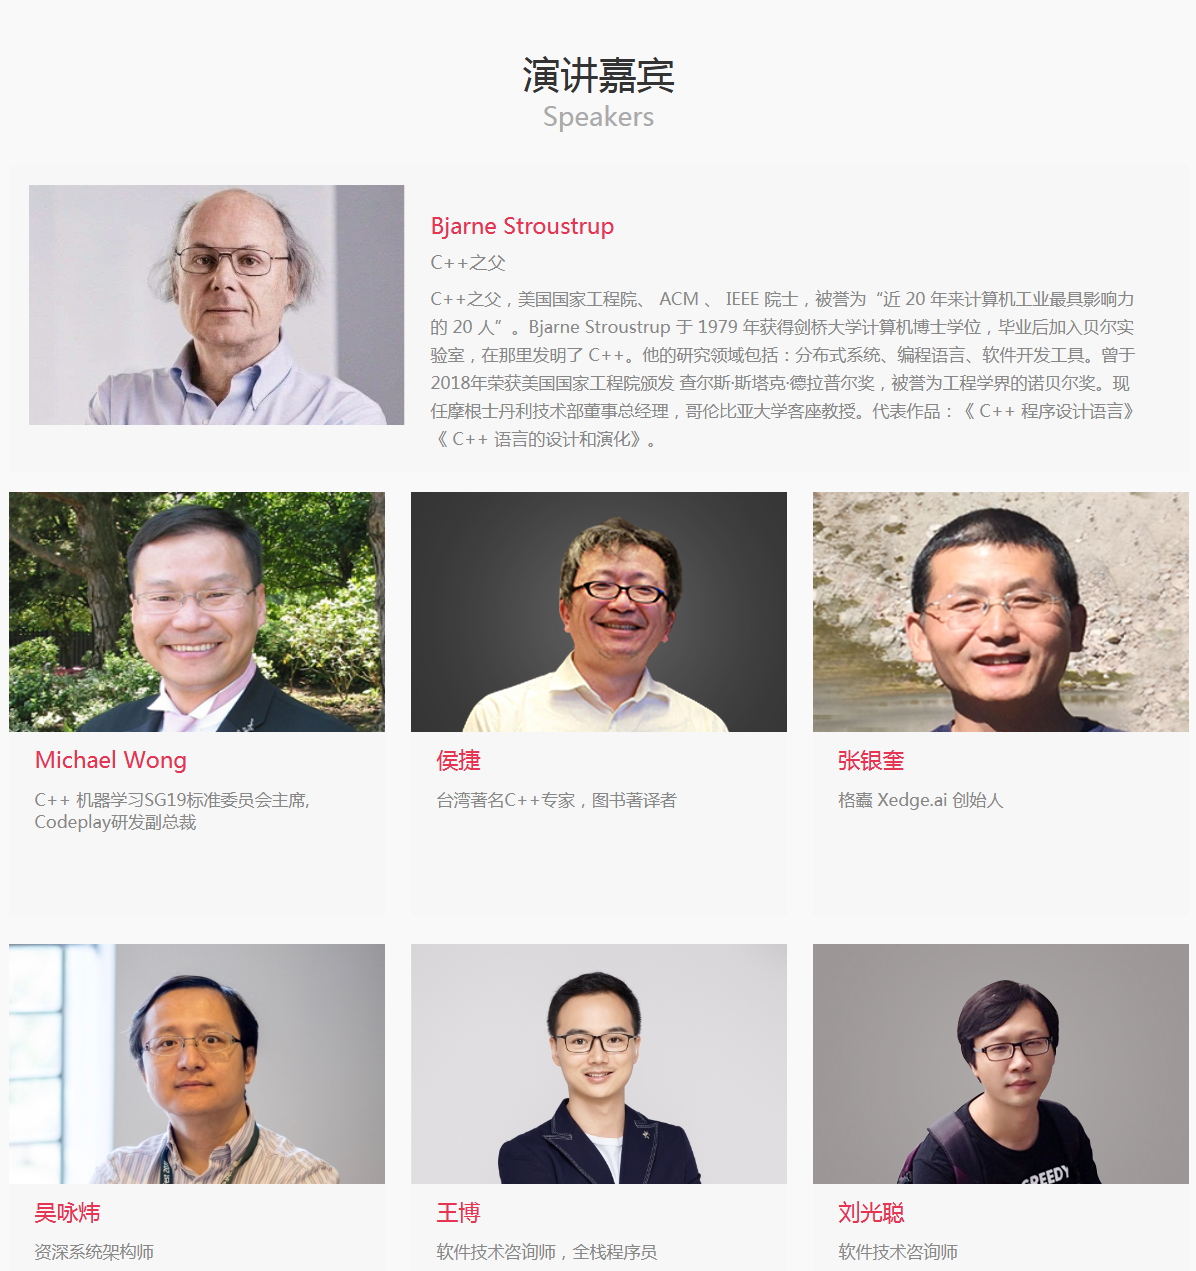 CPP-Summit 2019 全球C++软件技术大会（上海）